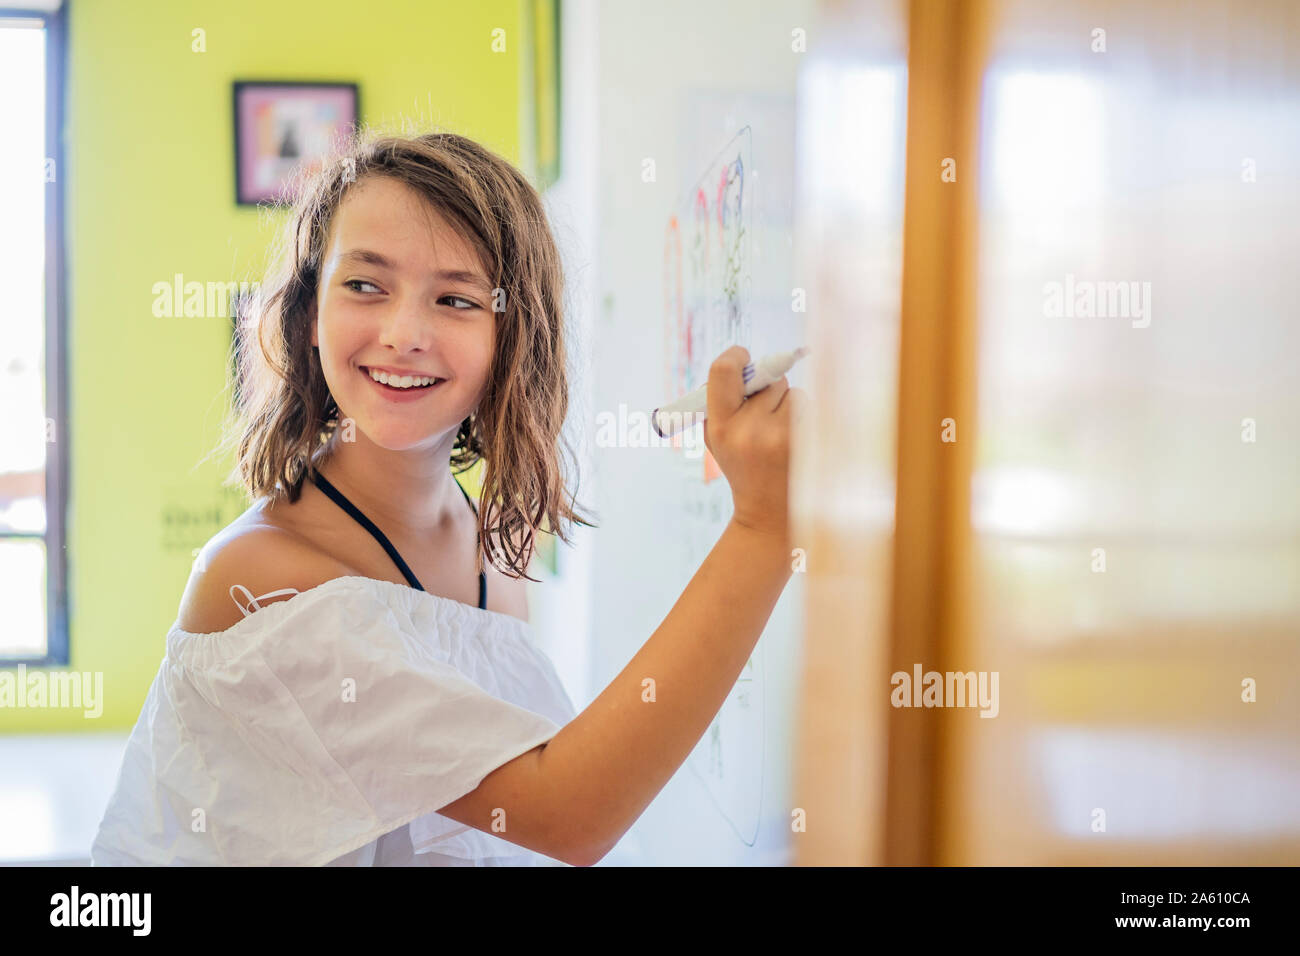 Portrait of smiling girl s'appuyant sur un tableau. Banque D'Images